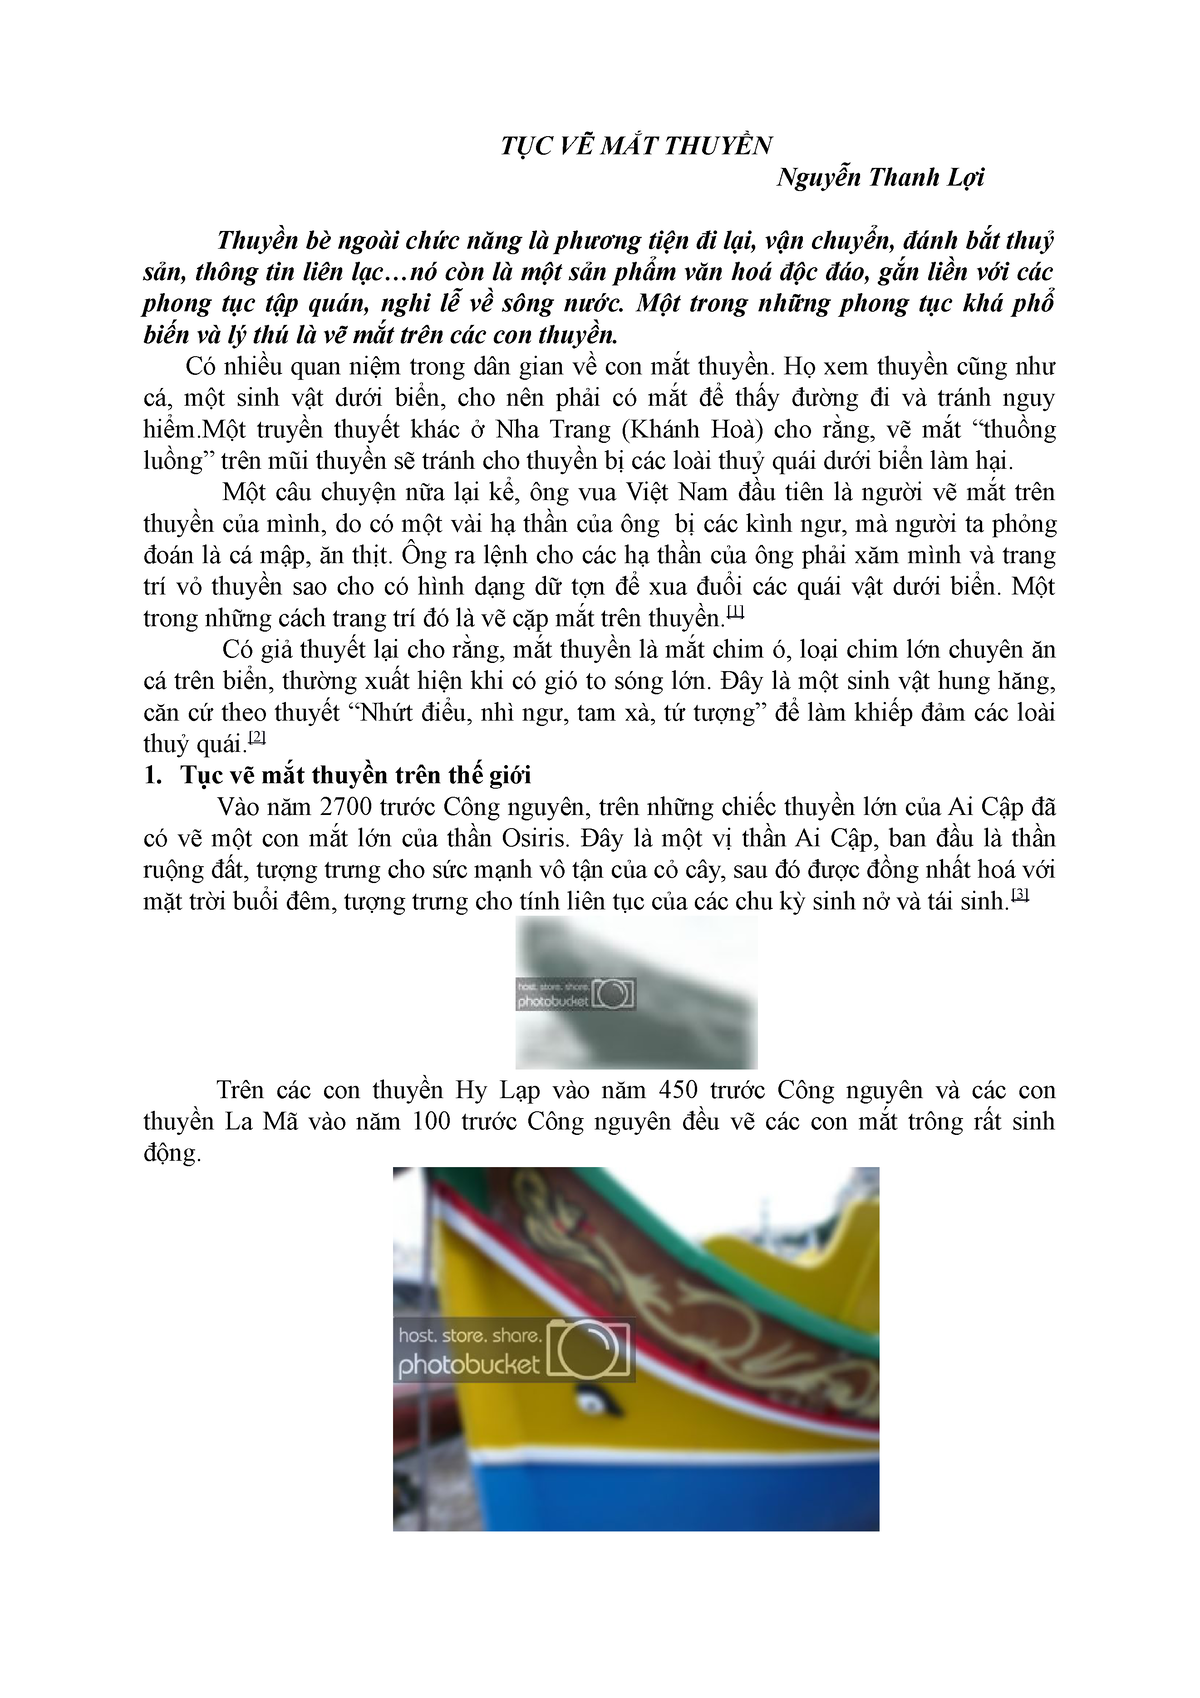 Tục vẽ mắt thuyền: Tục vẽ mắt thuyền là nét văn hóa sâu sắc của người dân ven biển Việt Nam. Không chỉ để tăng tính thẩm mỹ cho những chiếc thuyền, mắt thuyền còn mang ý nghĩa phong thủy, đem lại may mắn cho ngư dân khi đánh bắt thủy sản. Hãy xem hình ảnh để thấy sự đẹp mắt của những chiếc thuyền quê hương.